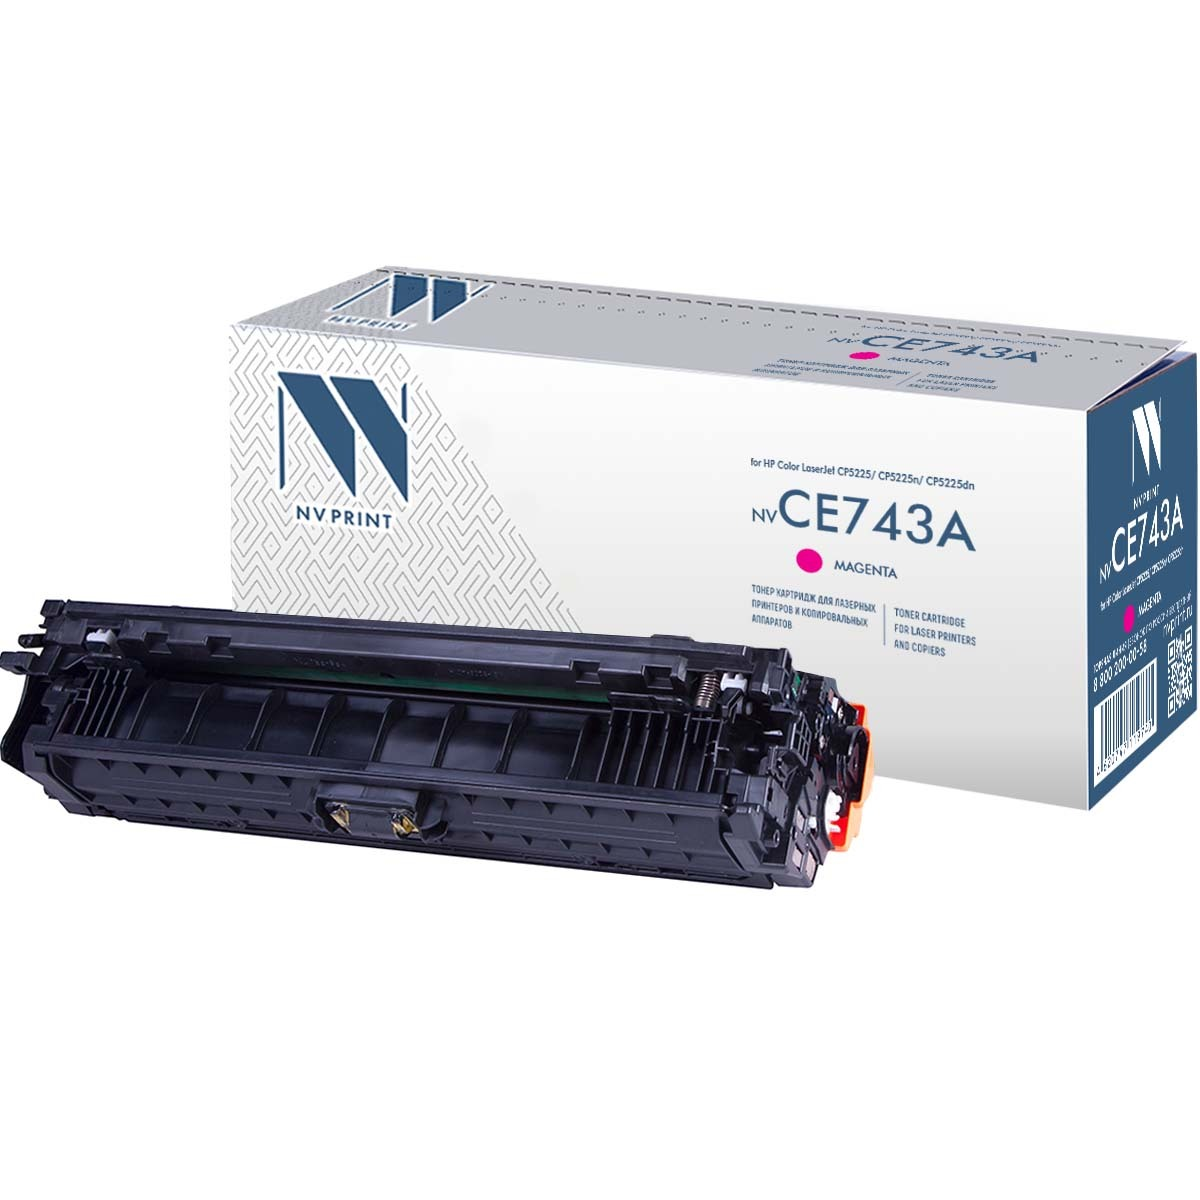  NVPrint Color LaserJet, NV-CE743AM